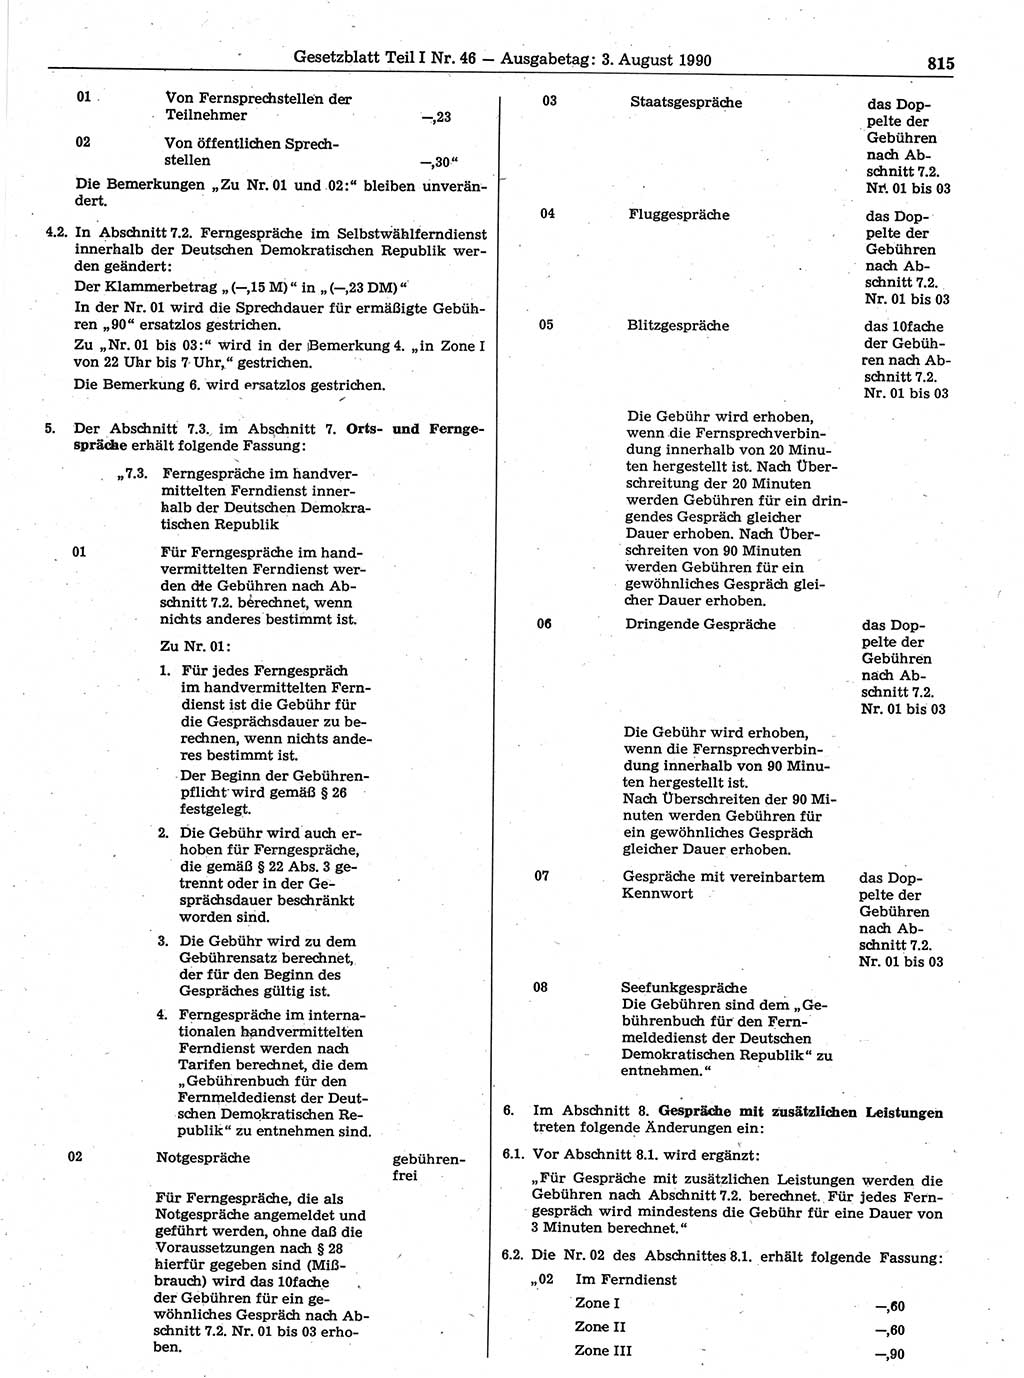 Gesetzblatt (GBl.) der Deutschen Demokratischen Republik (DDR) Teil Ⅰ 1990, Seite 815 (GBl. DDR Ⅰ 1990, S. 815)